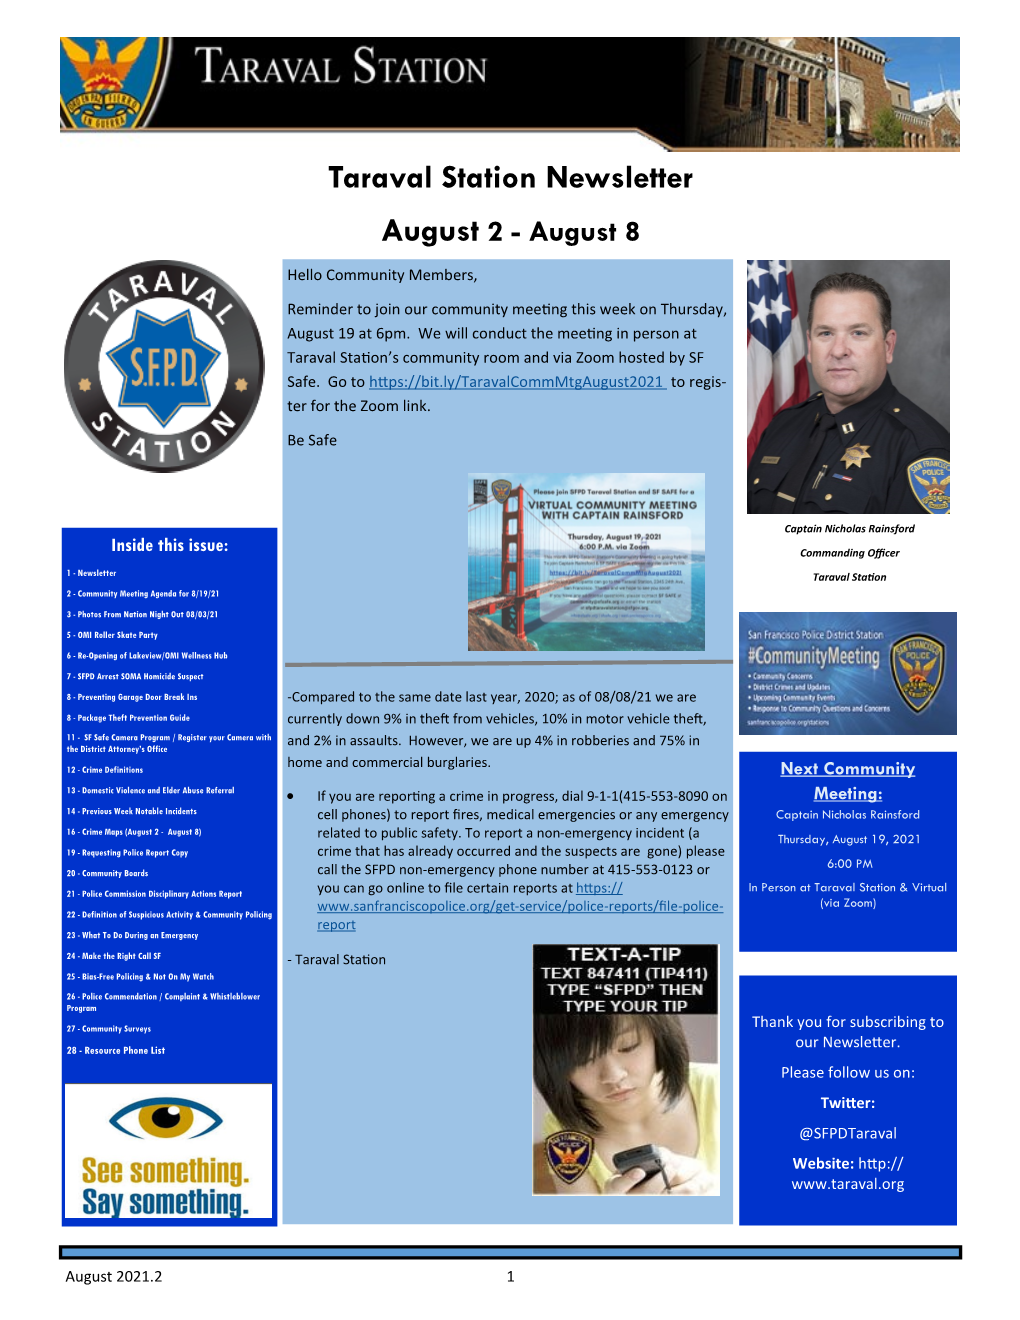 Taraval Station Newsletter August 2 - August 8